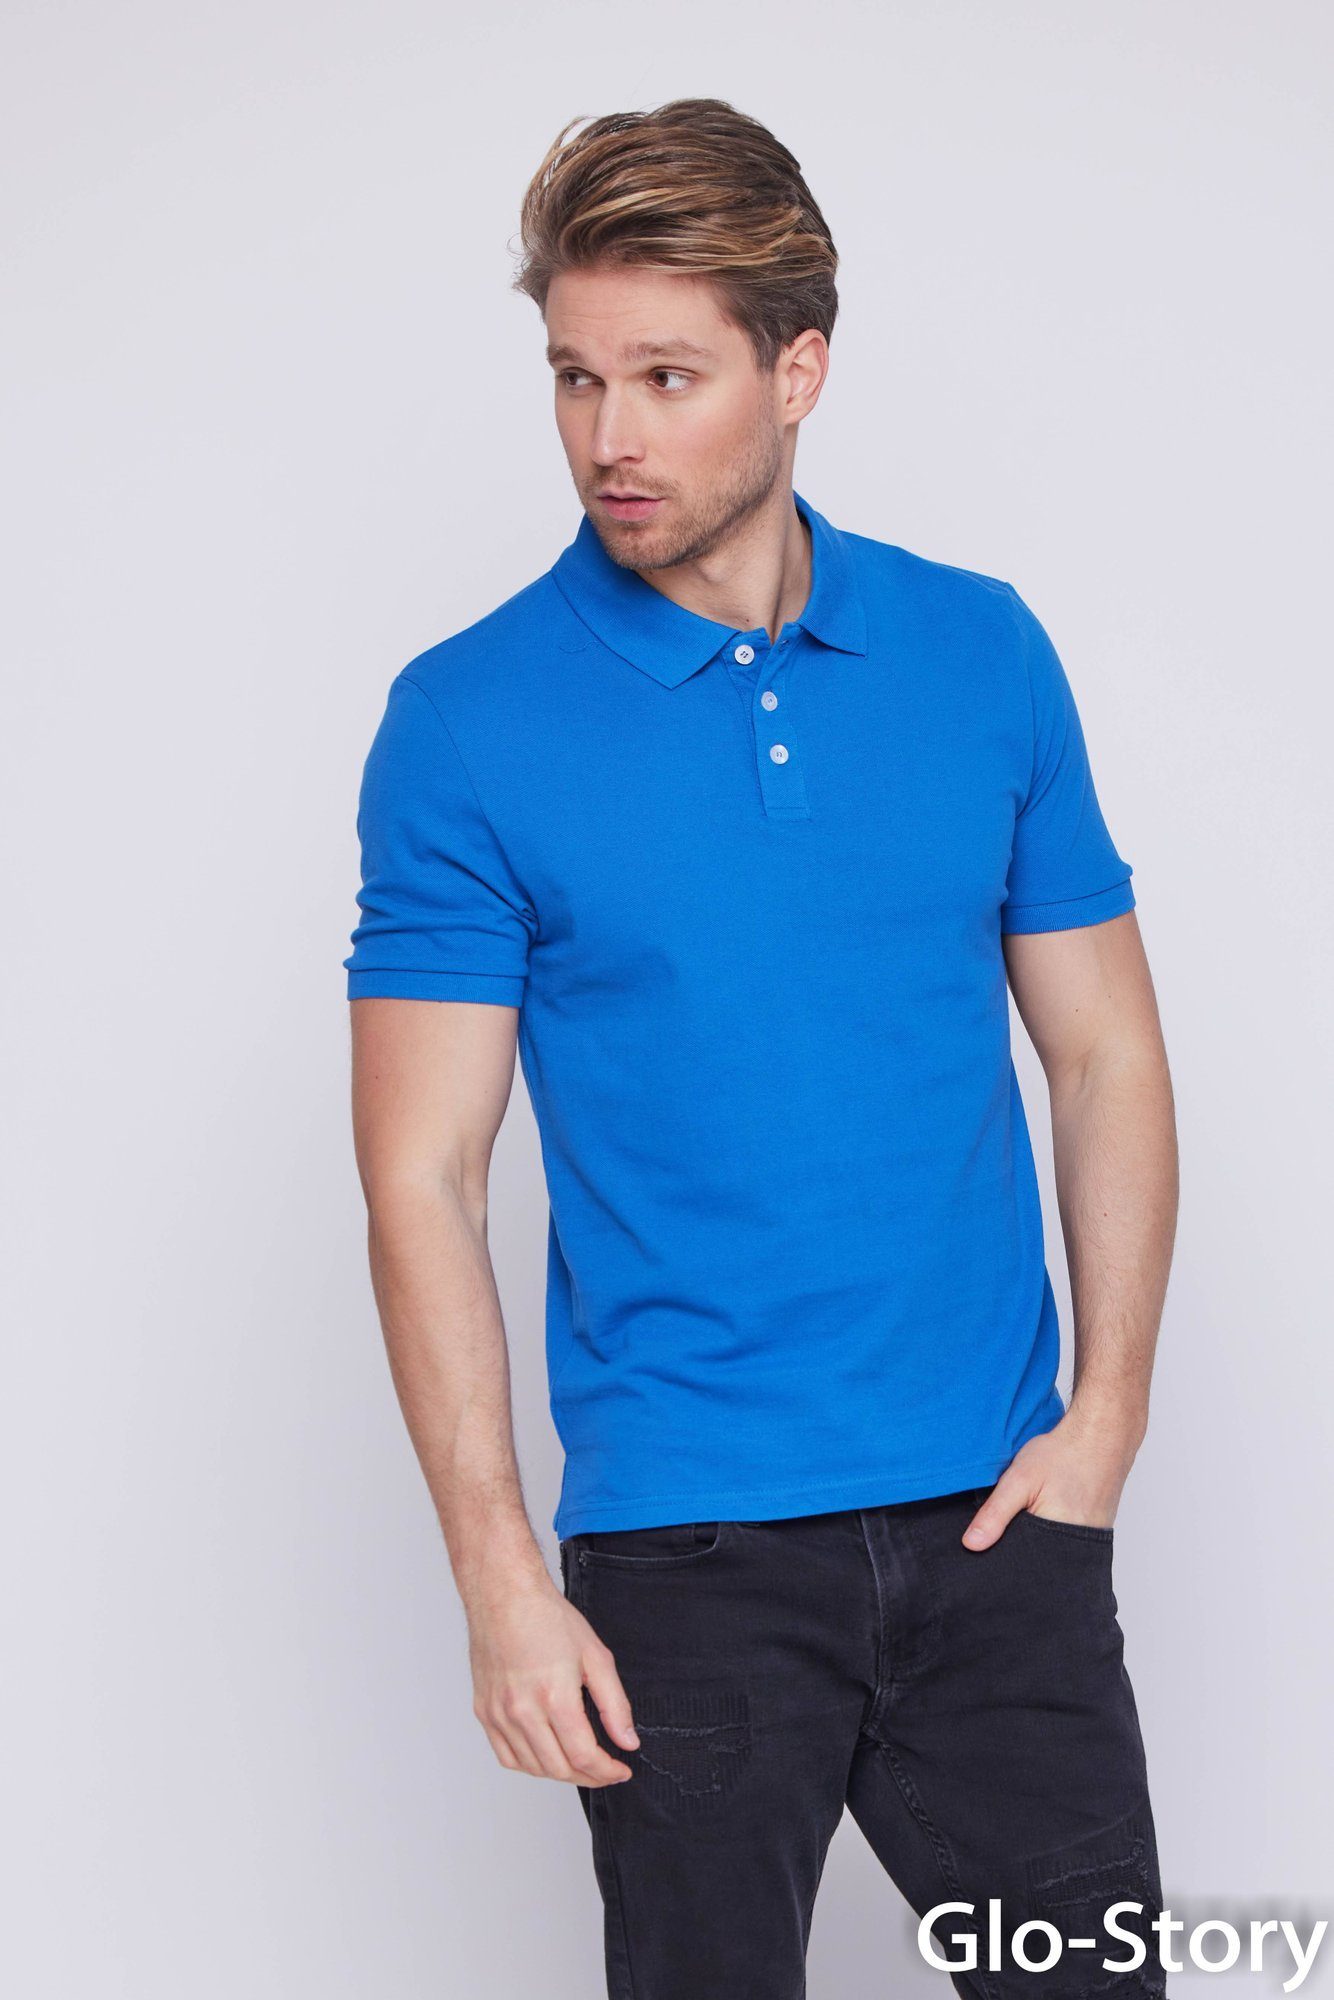 Sapphire-Blau GLO-STORY Herren Basic Shirt Poloshirt Polohemd Polo Poloshirt GLO-STORY Regular Kurzarm